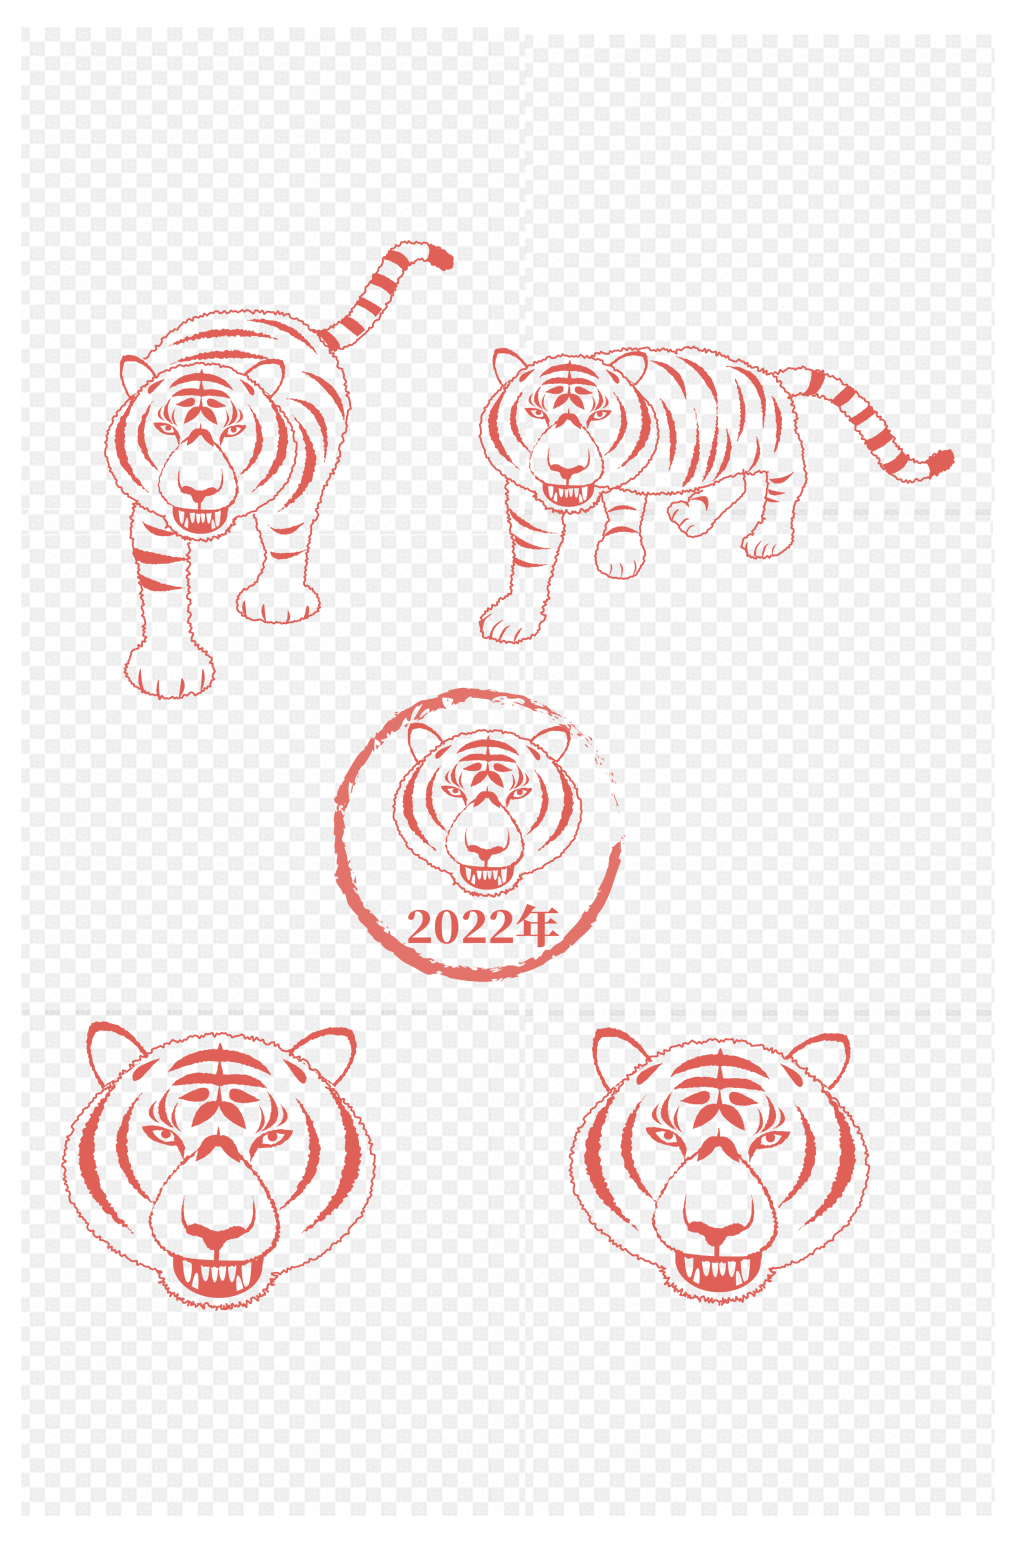 2022虎虎生威徽章设计图片